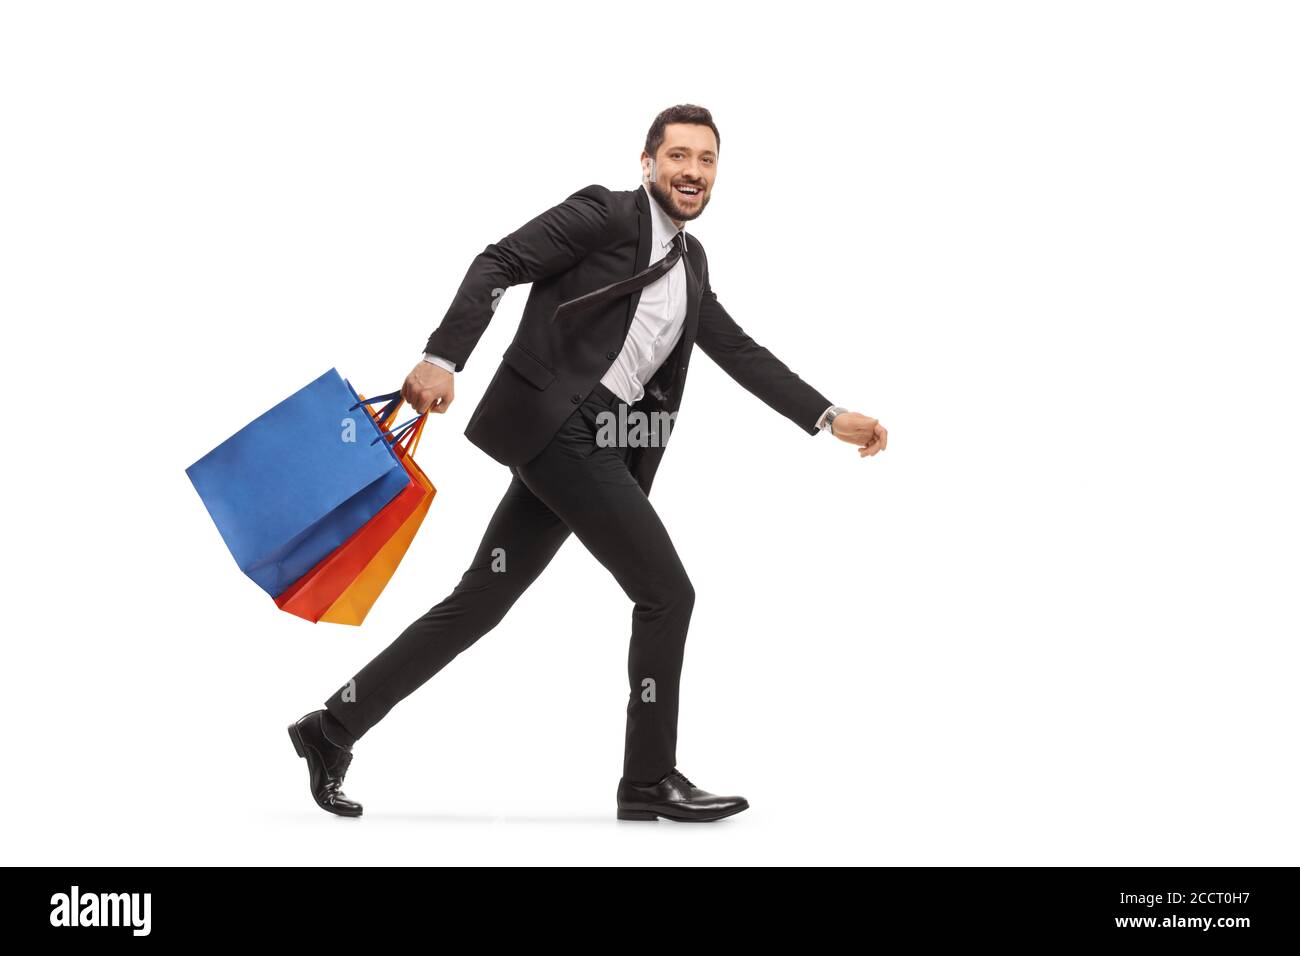 Mann in einem Anzug, der mit isolierten Einkaufstaschen läuft Weißer Hintergrund Stockfoto